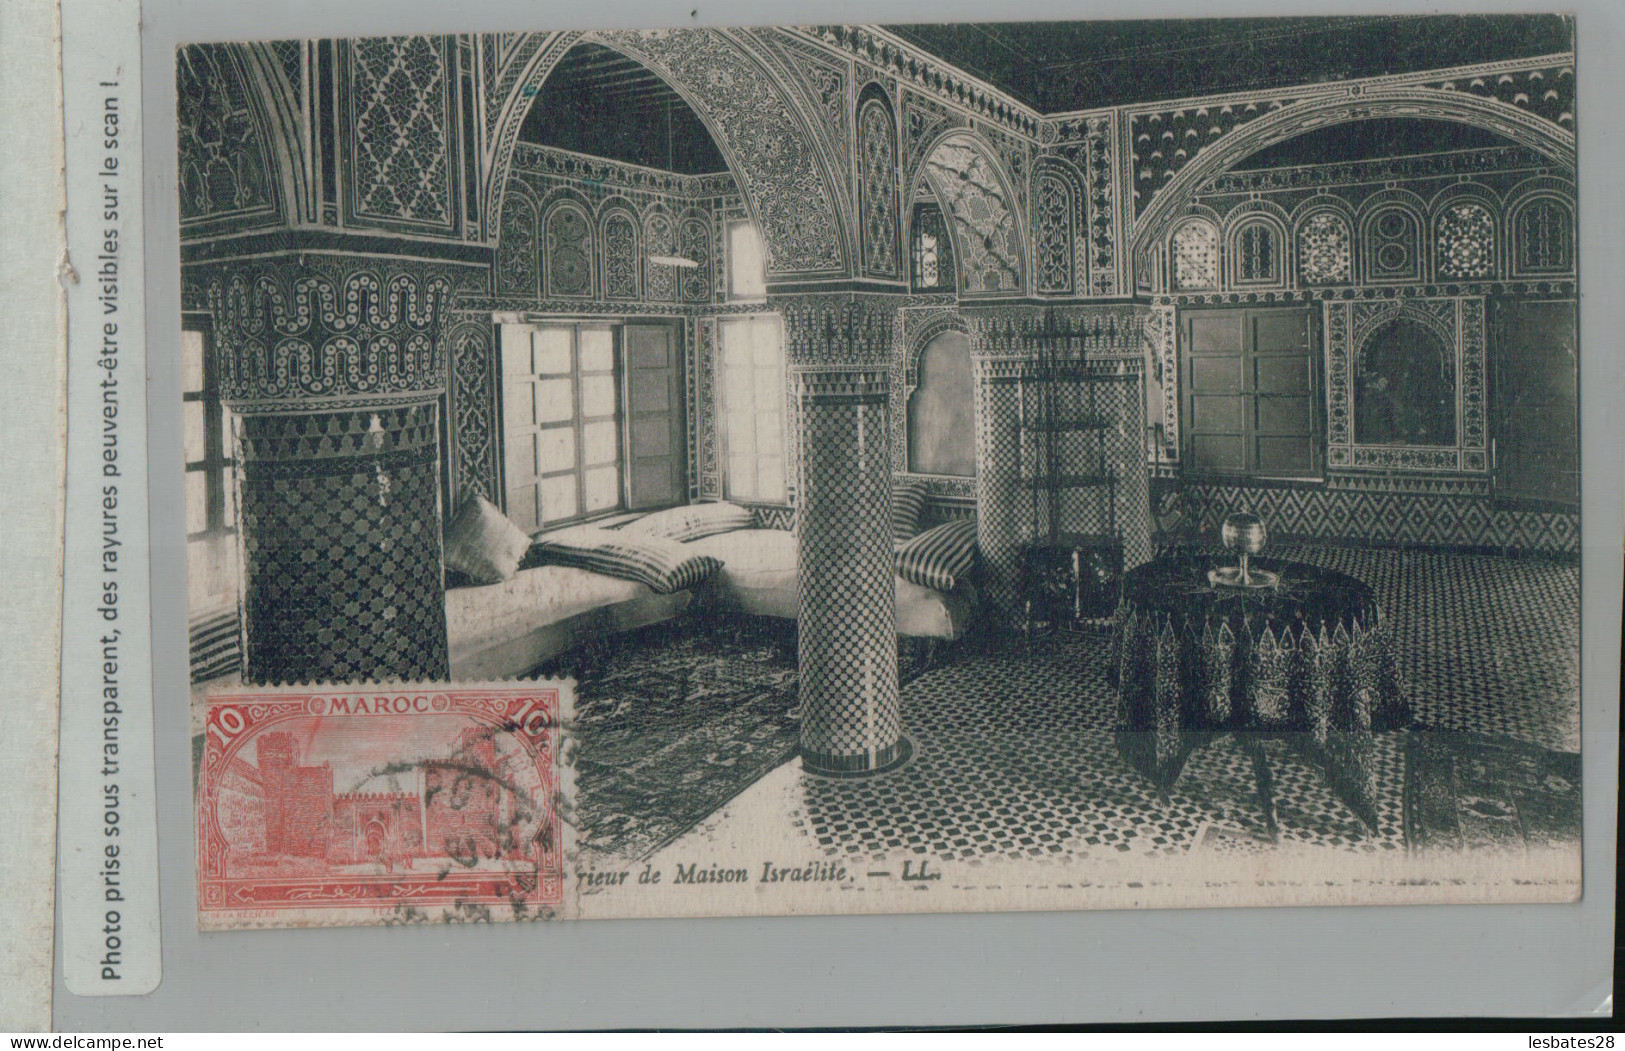 MAROC FEZ Intérieur De Maison Israélite Un Salon JUDAICA   (2024 Avril 269)  - Fez